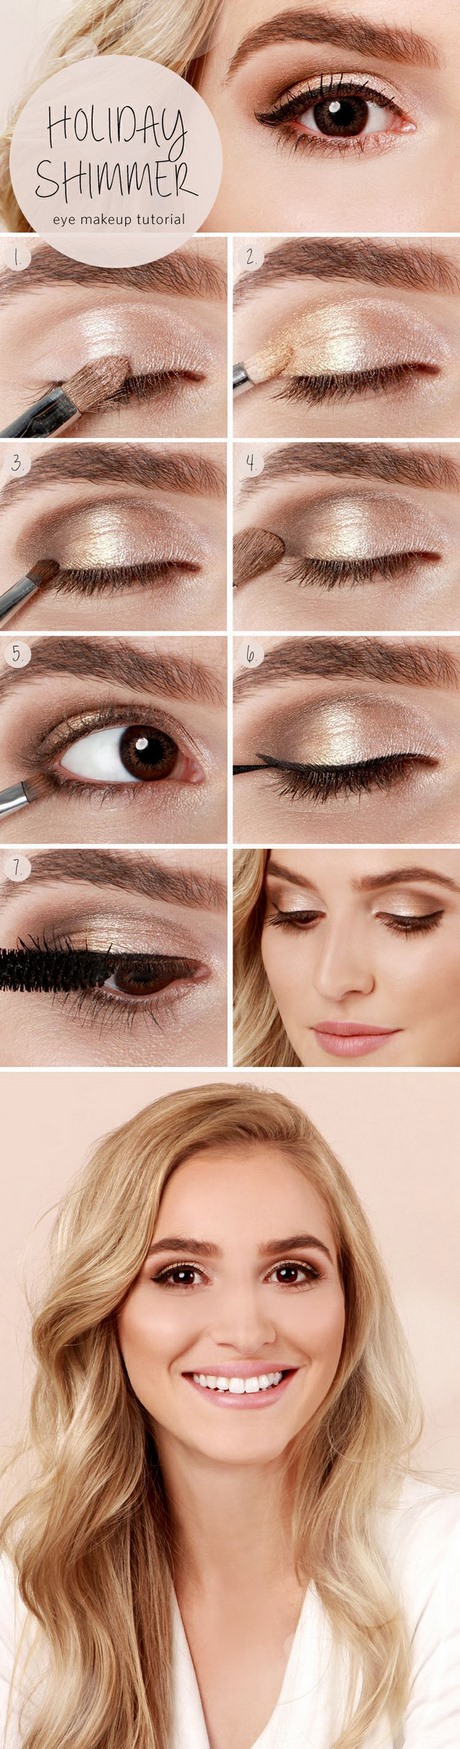 wedding-eye-makeup-tutorial-08_19 Handleiding voor huwelijksoog make-up